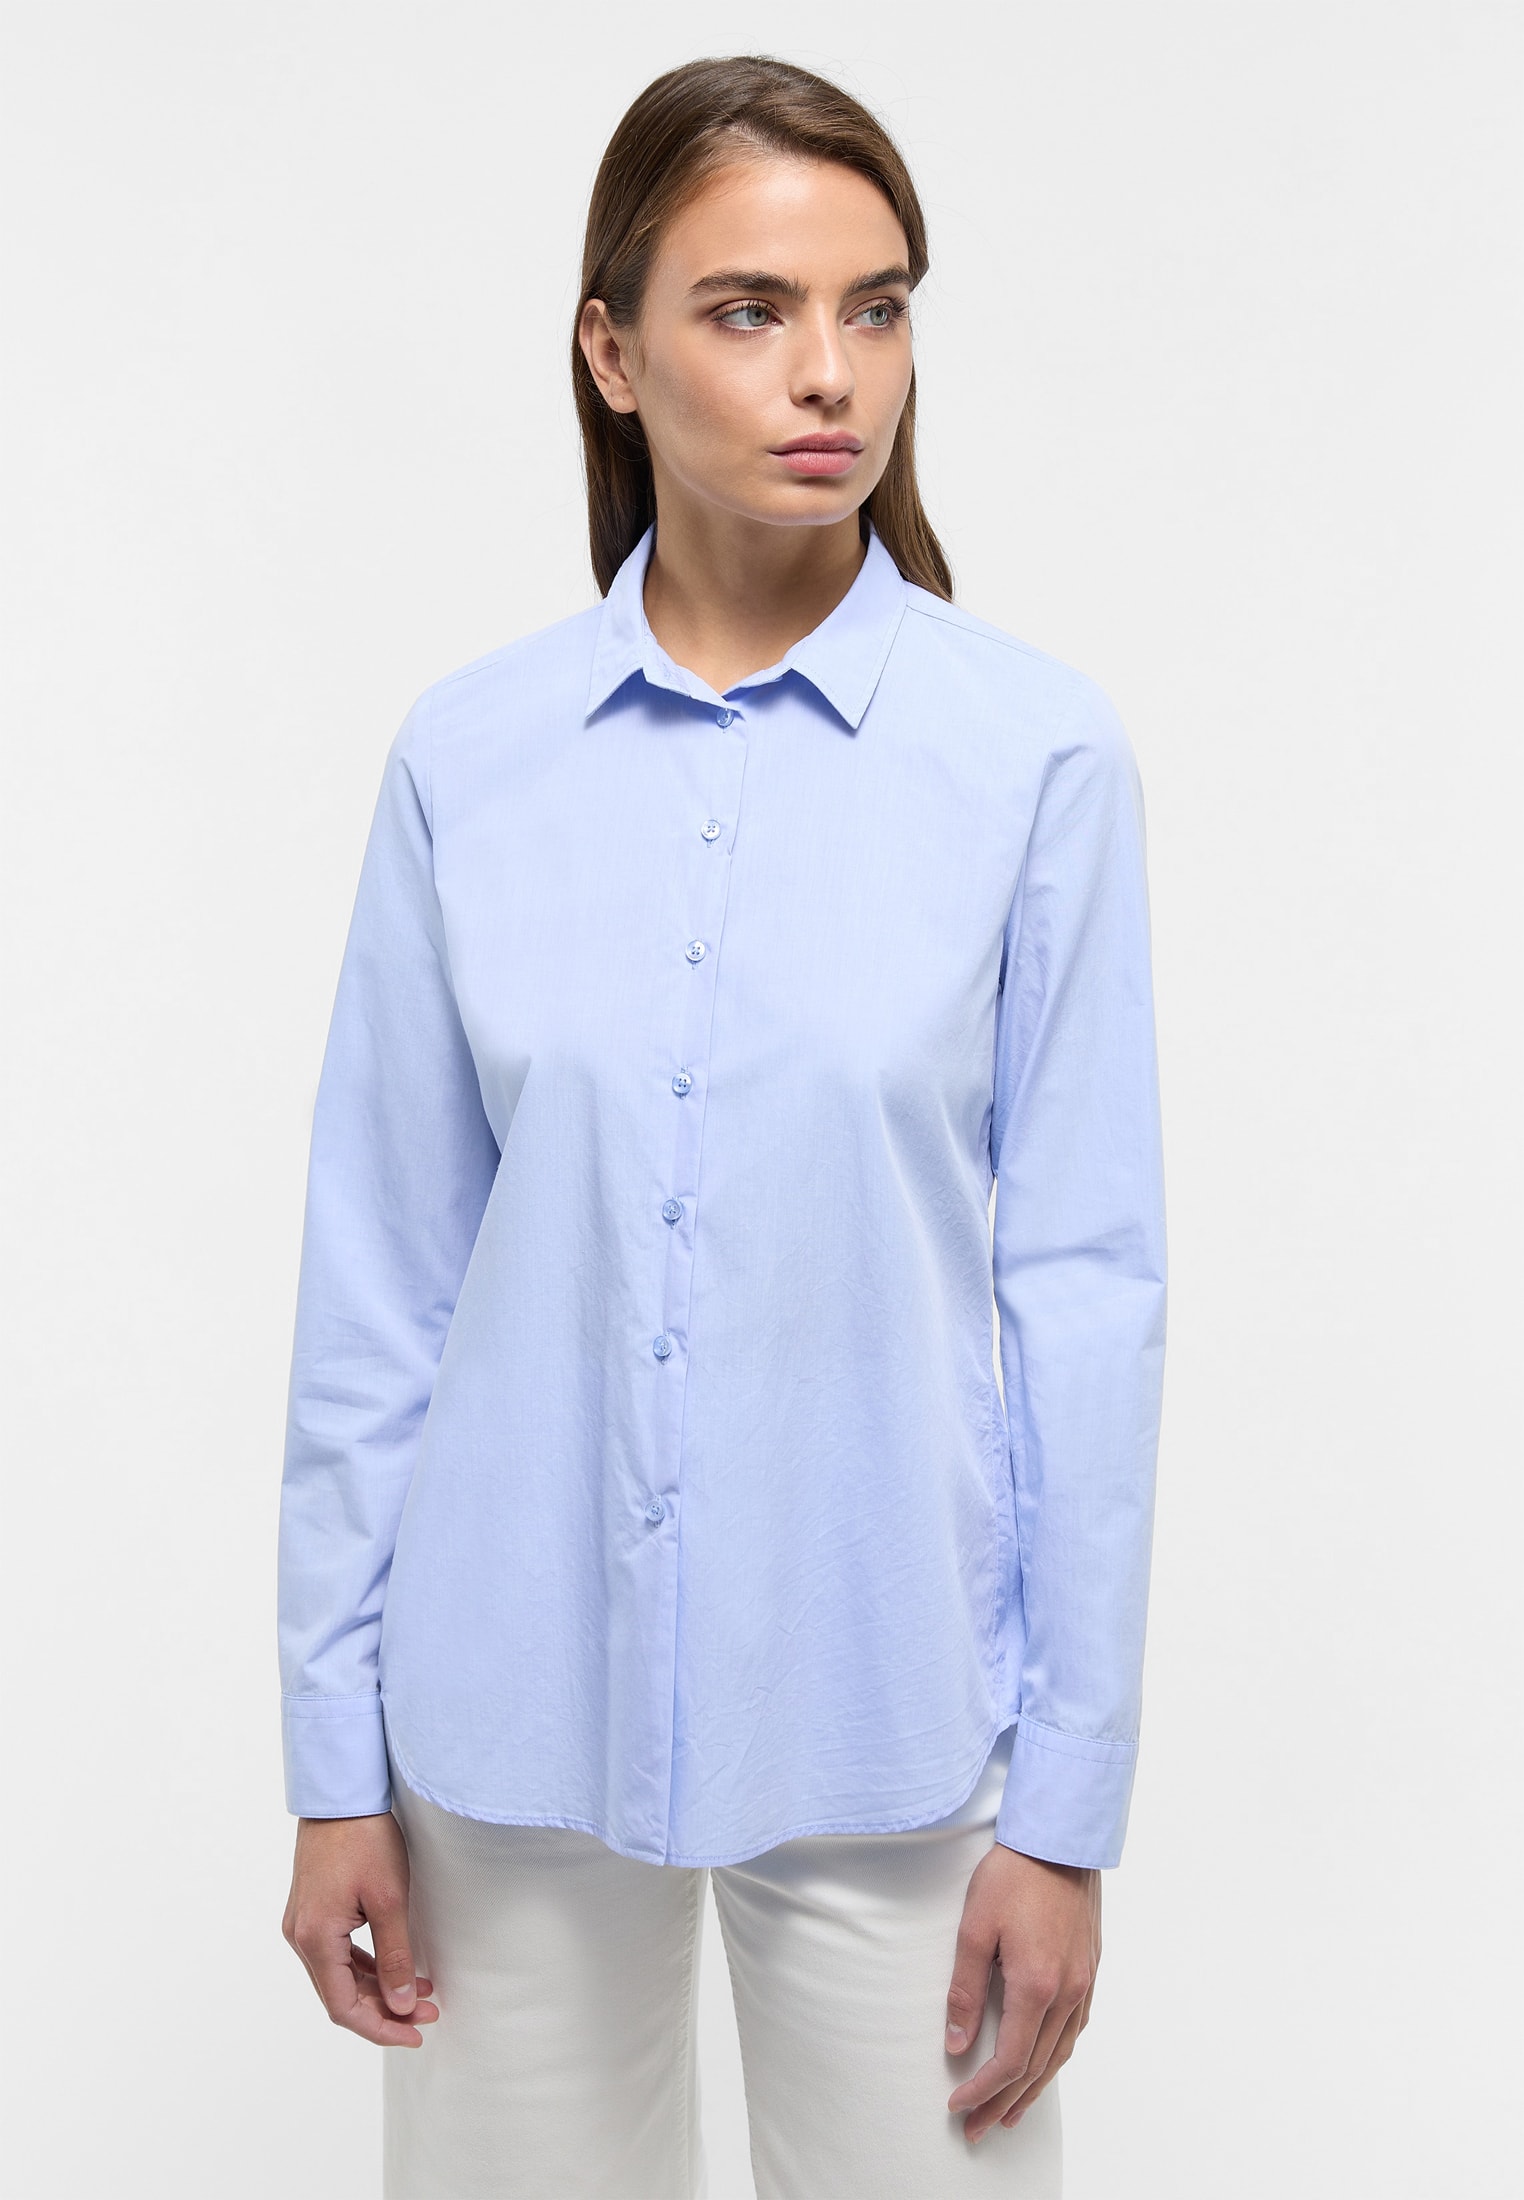 Blusen für Damen | kaufen online ETERNA